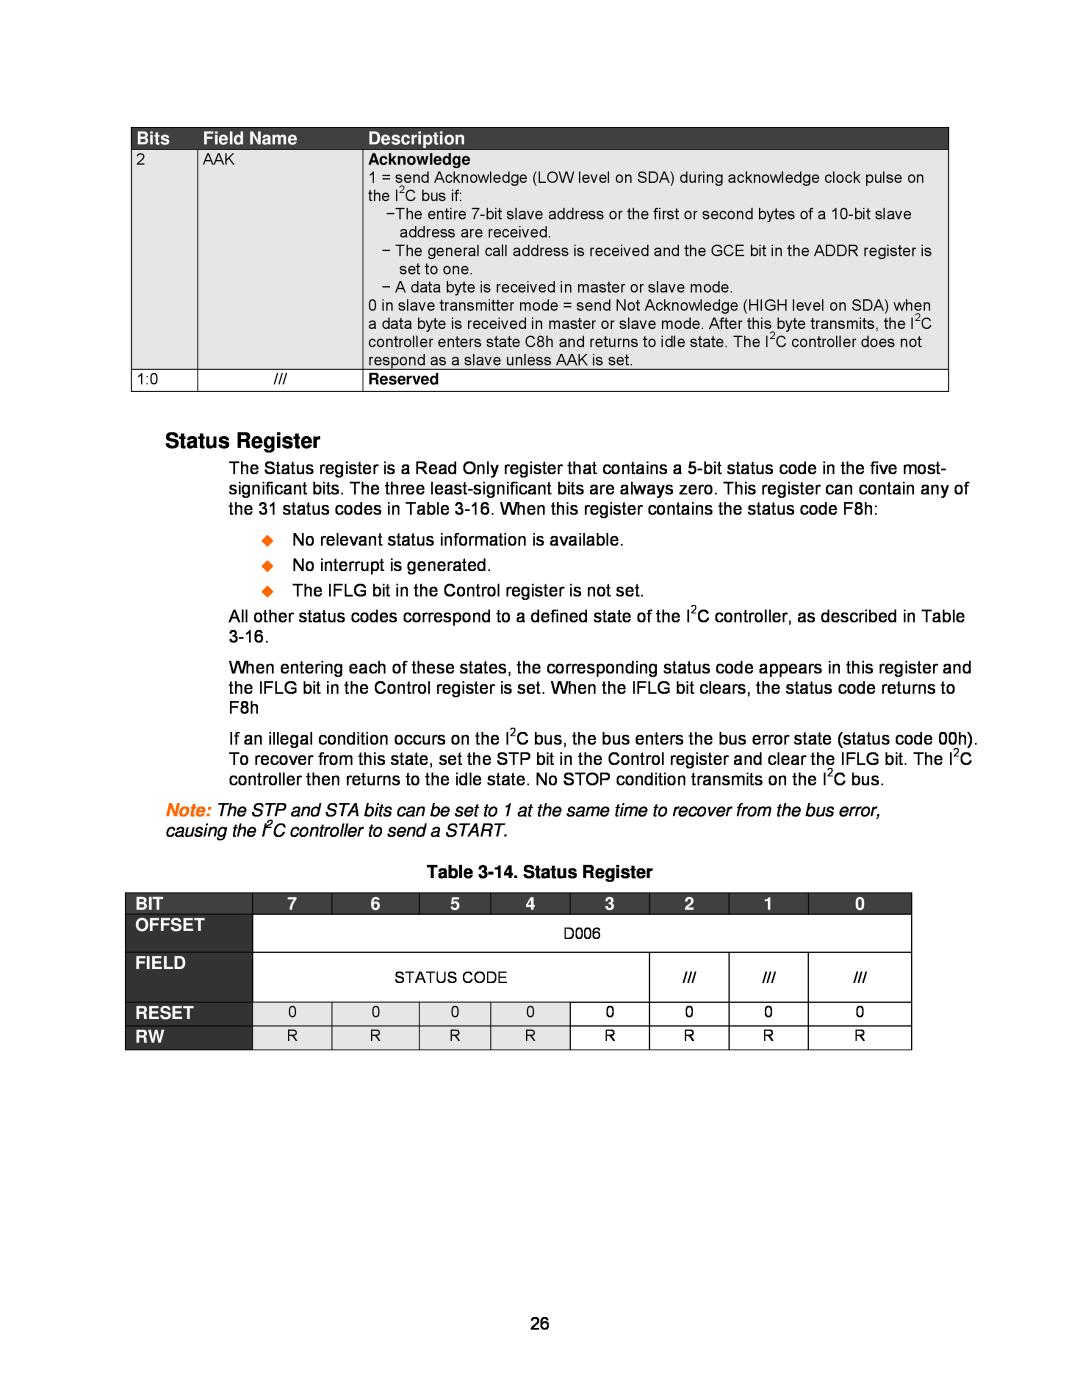 Lantronix DSTni-EX manual 14. Status Register 